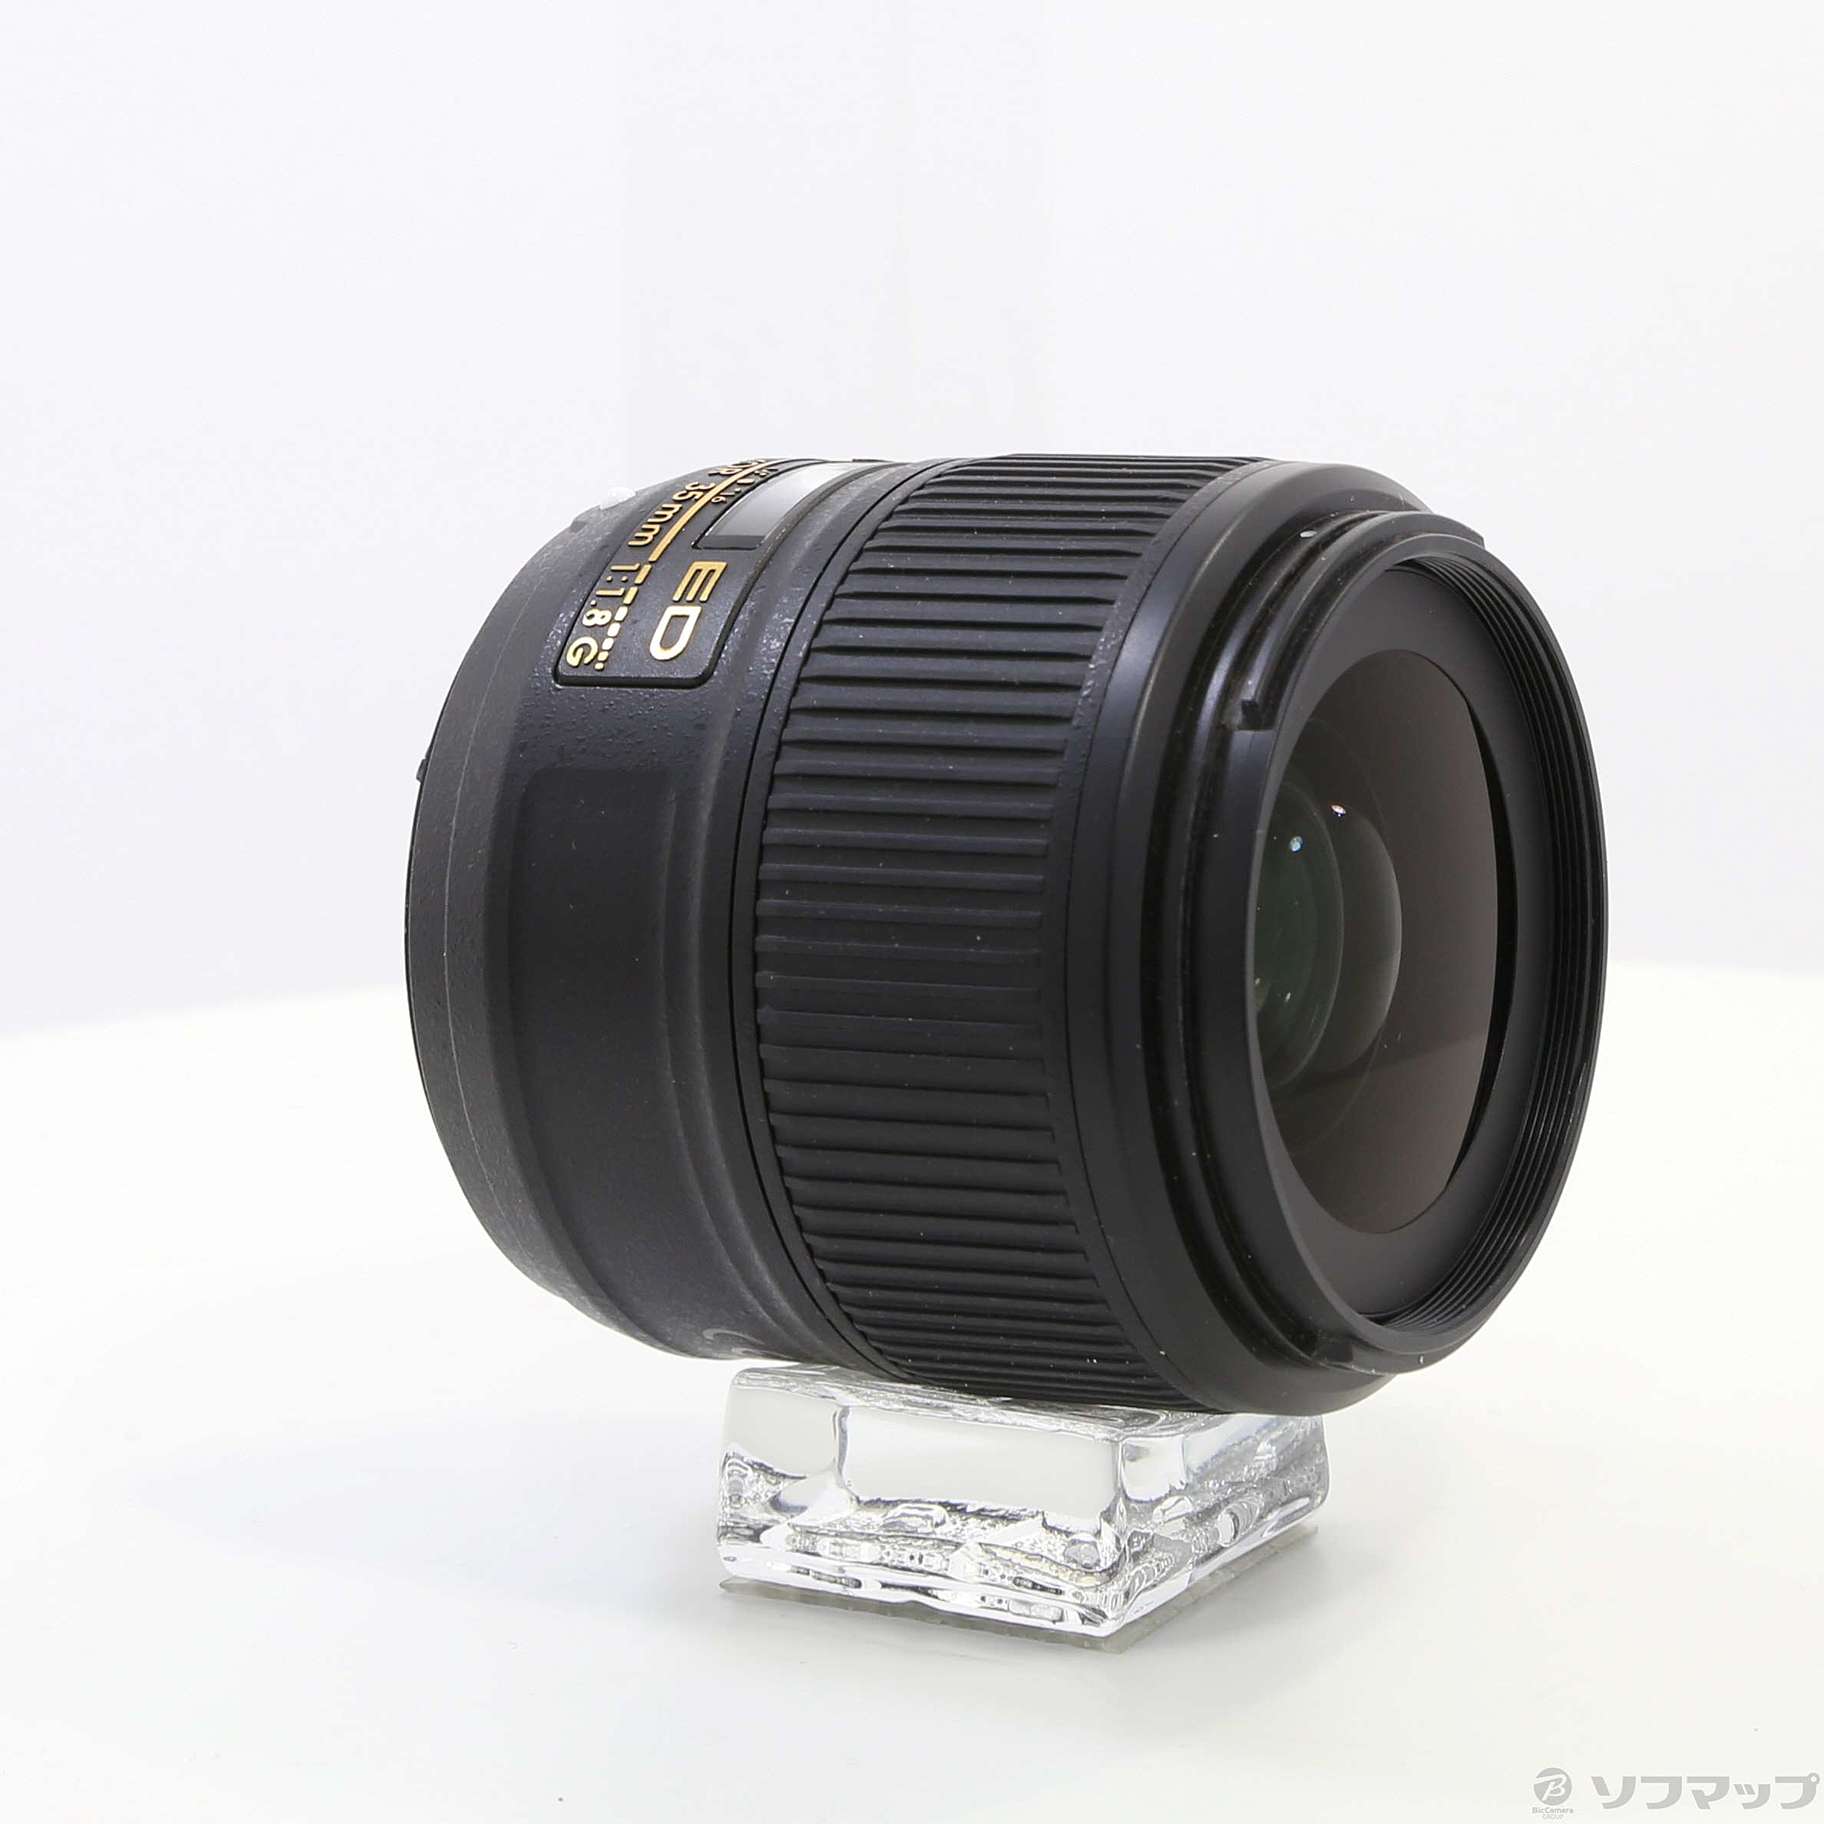 ニコン 35mm FX F1.8G ED